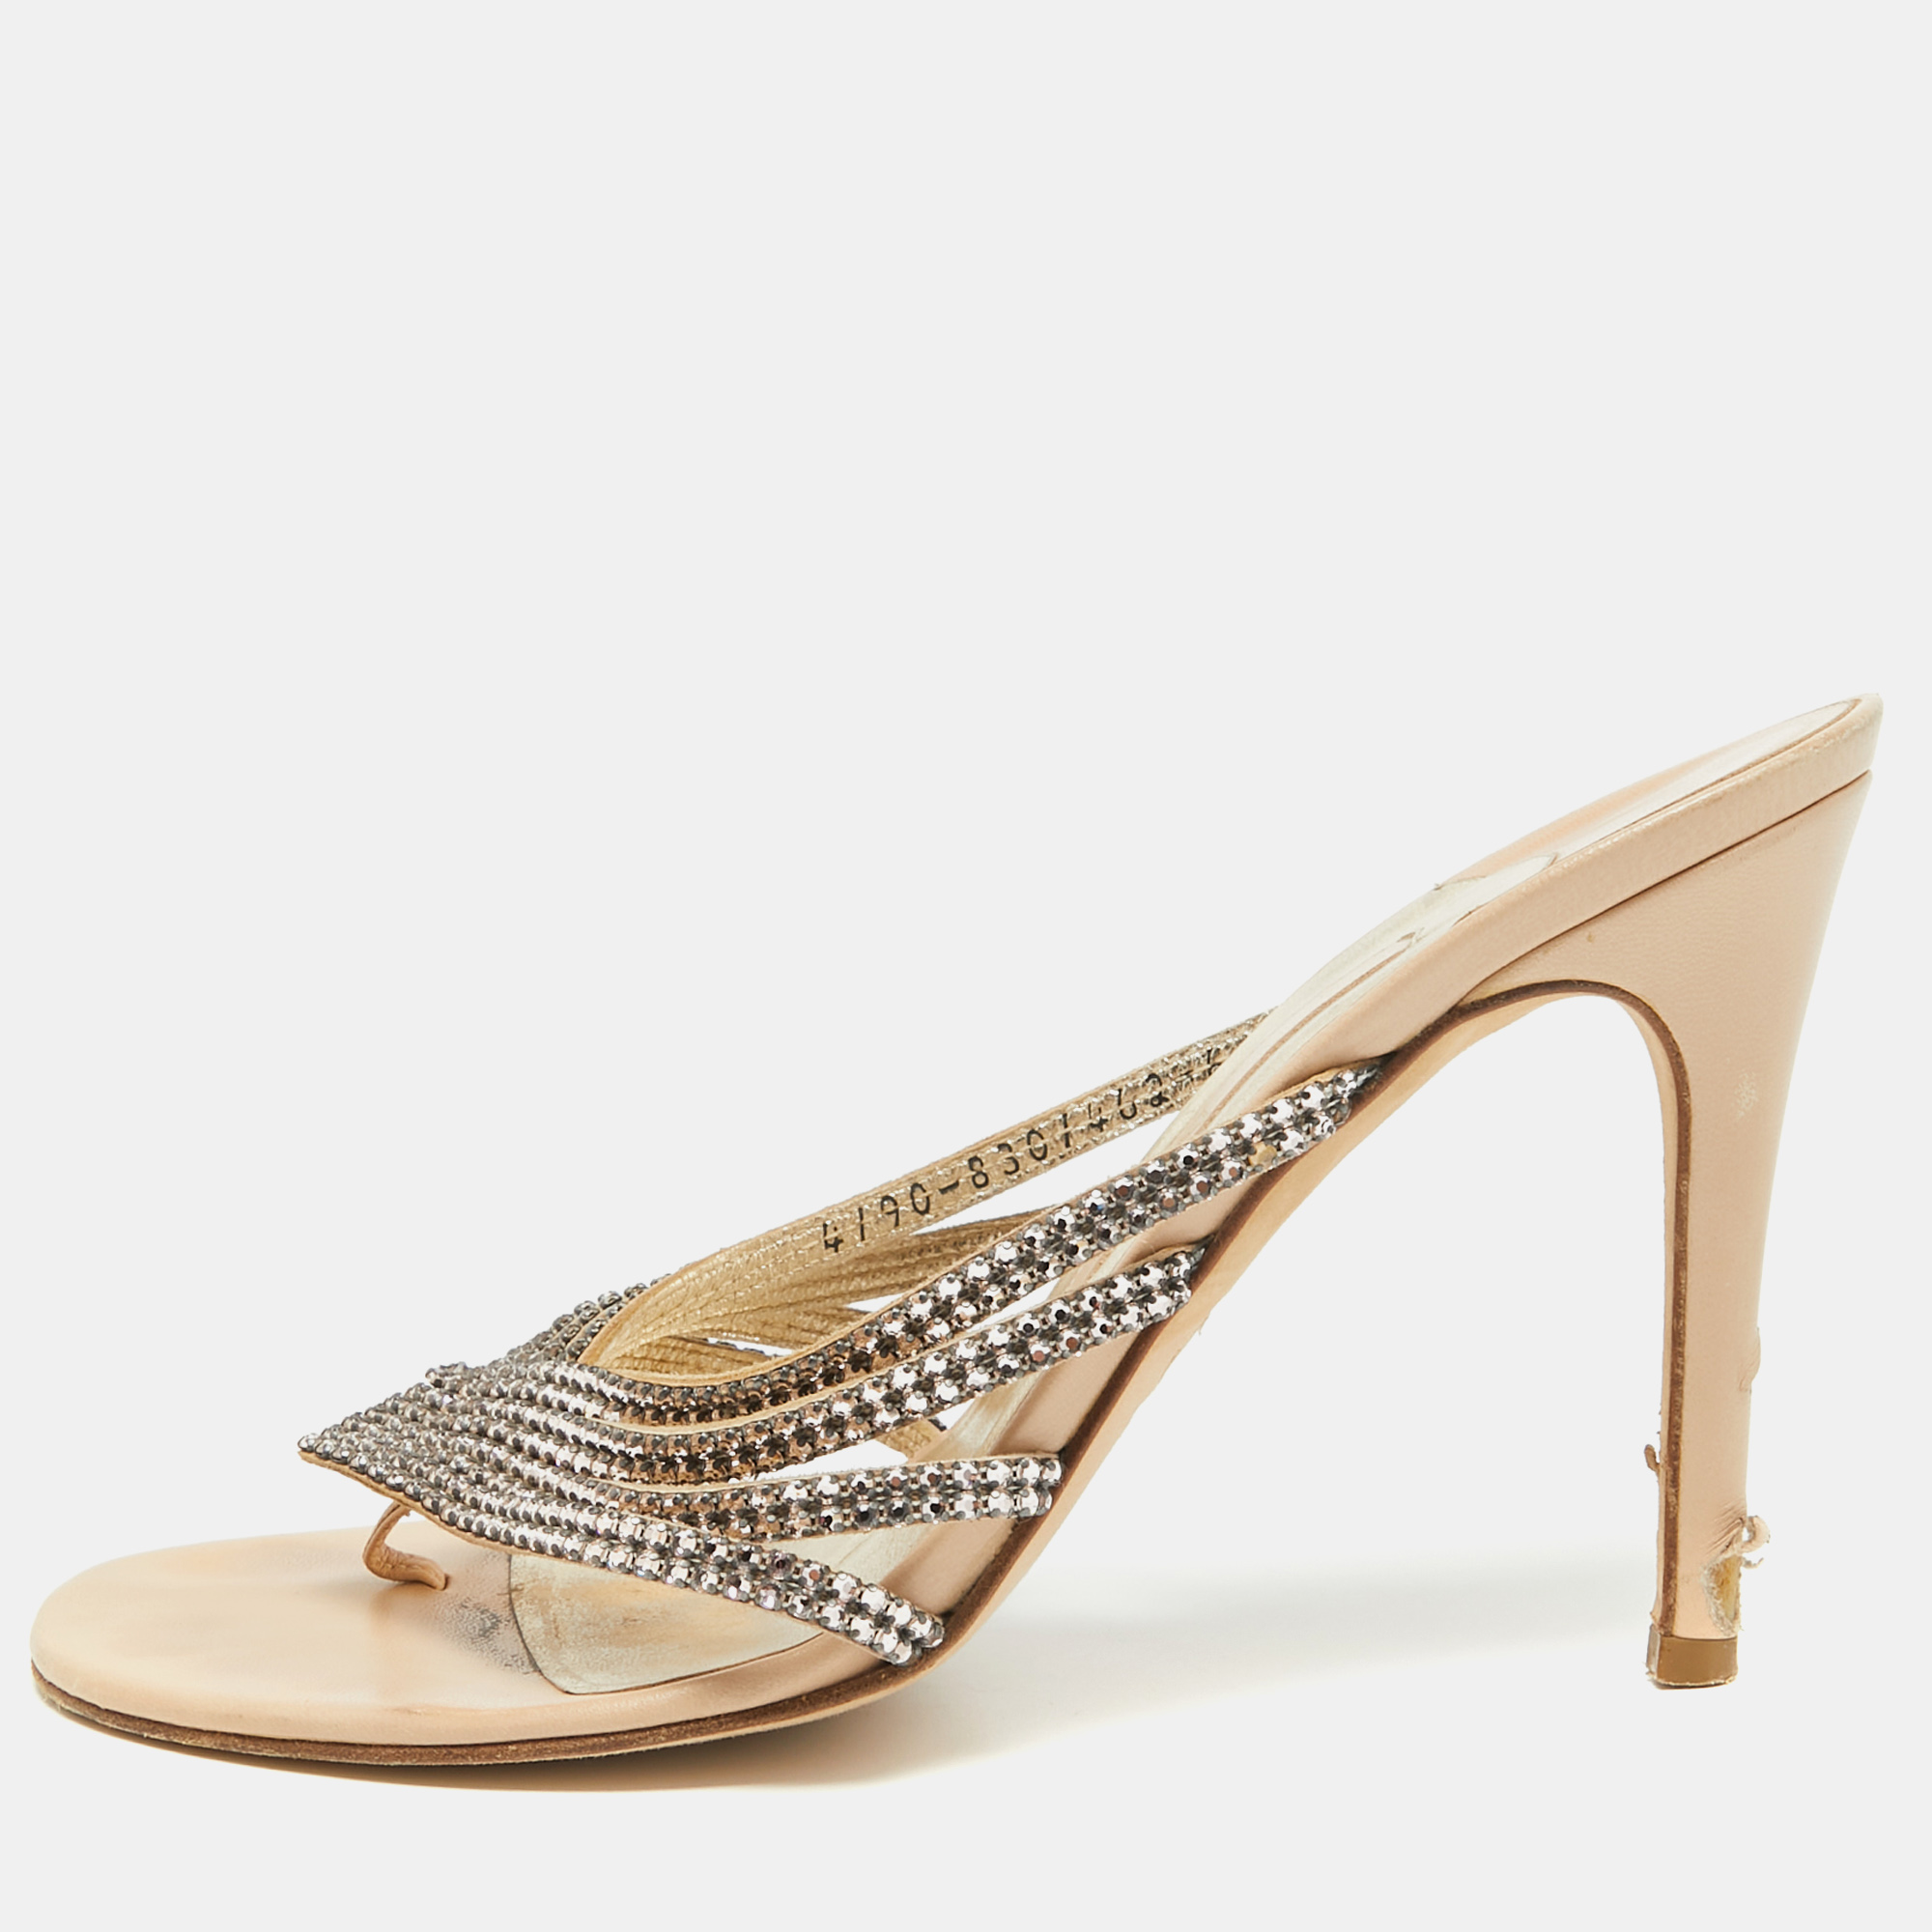 Gina beige leather and crystal embellished slide sandals size 39